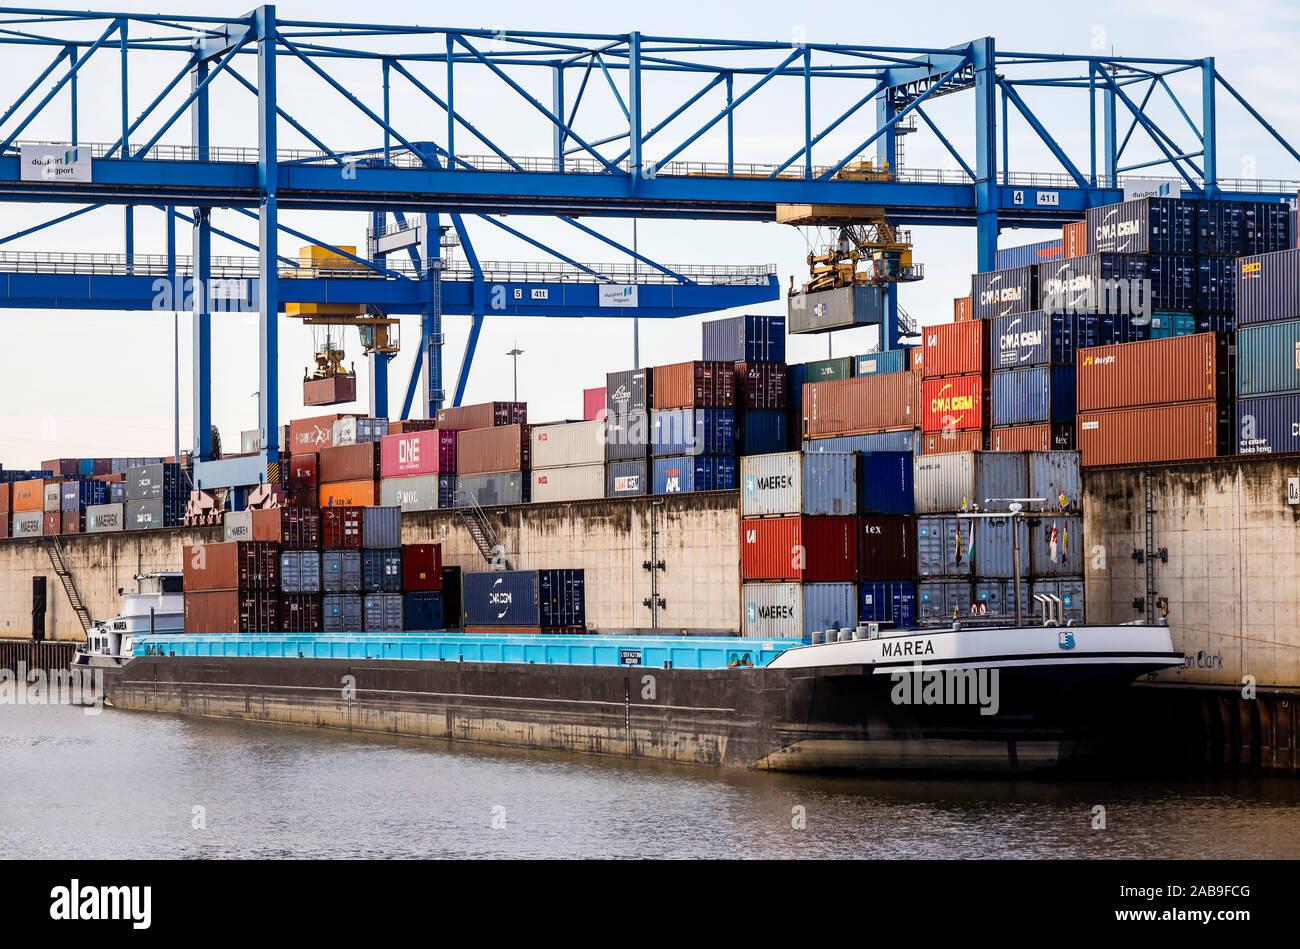 Duisburg, Ruhrgebiet, Nordrhein-Westfalen, Deutschland - Duisburger Hafen, Containerhafen, duisport Logport, zwei der weltweit größten Behälter shipow Stockfoto